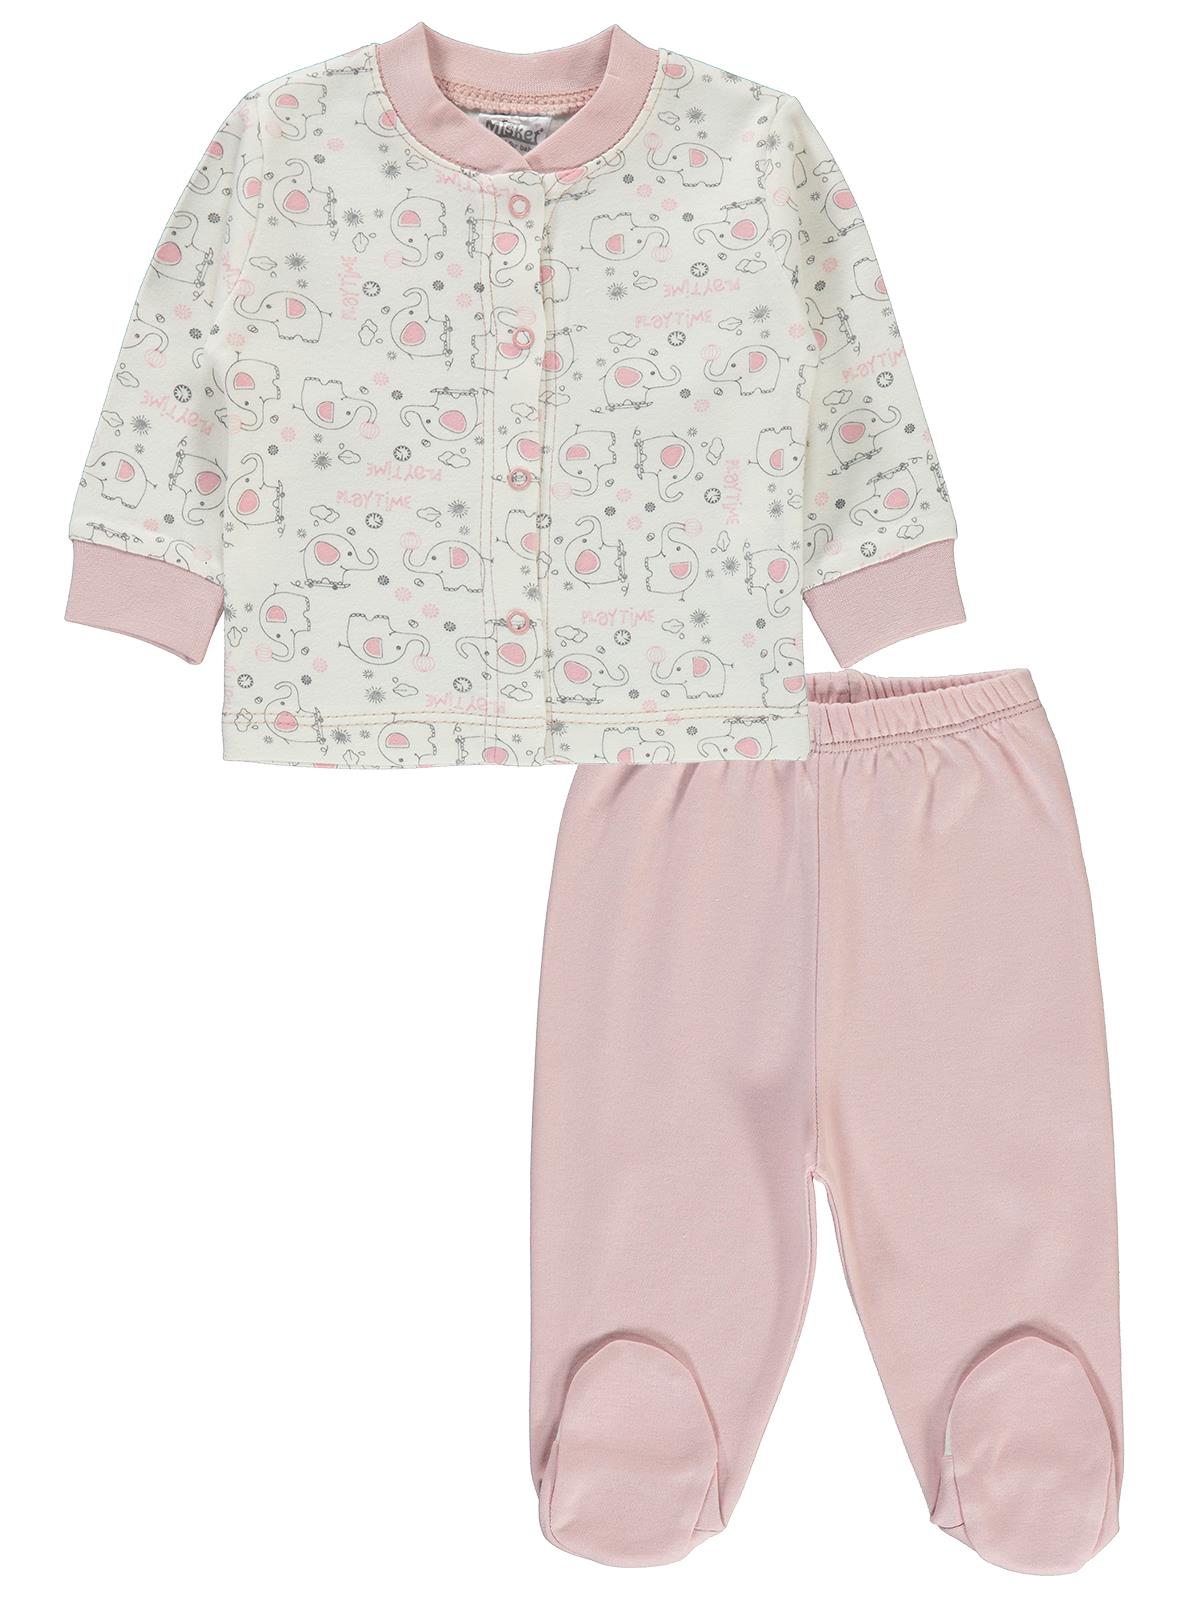 Misket Kız Bebek Pijama Takımı 0-6 Ay Pudra